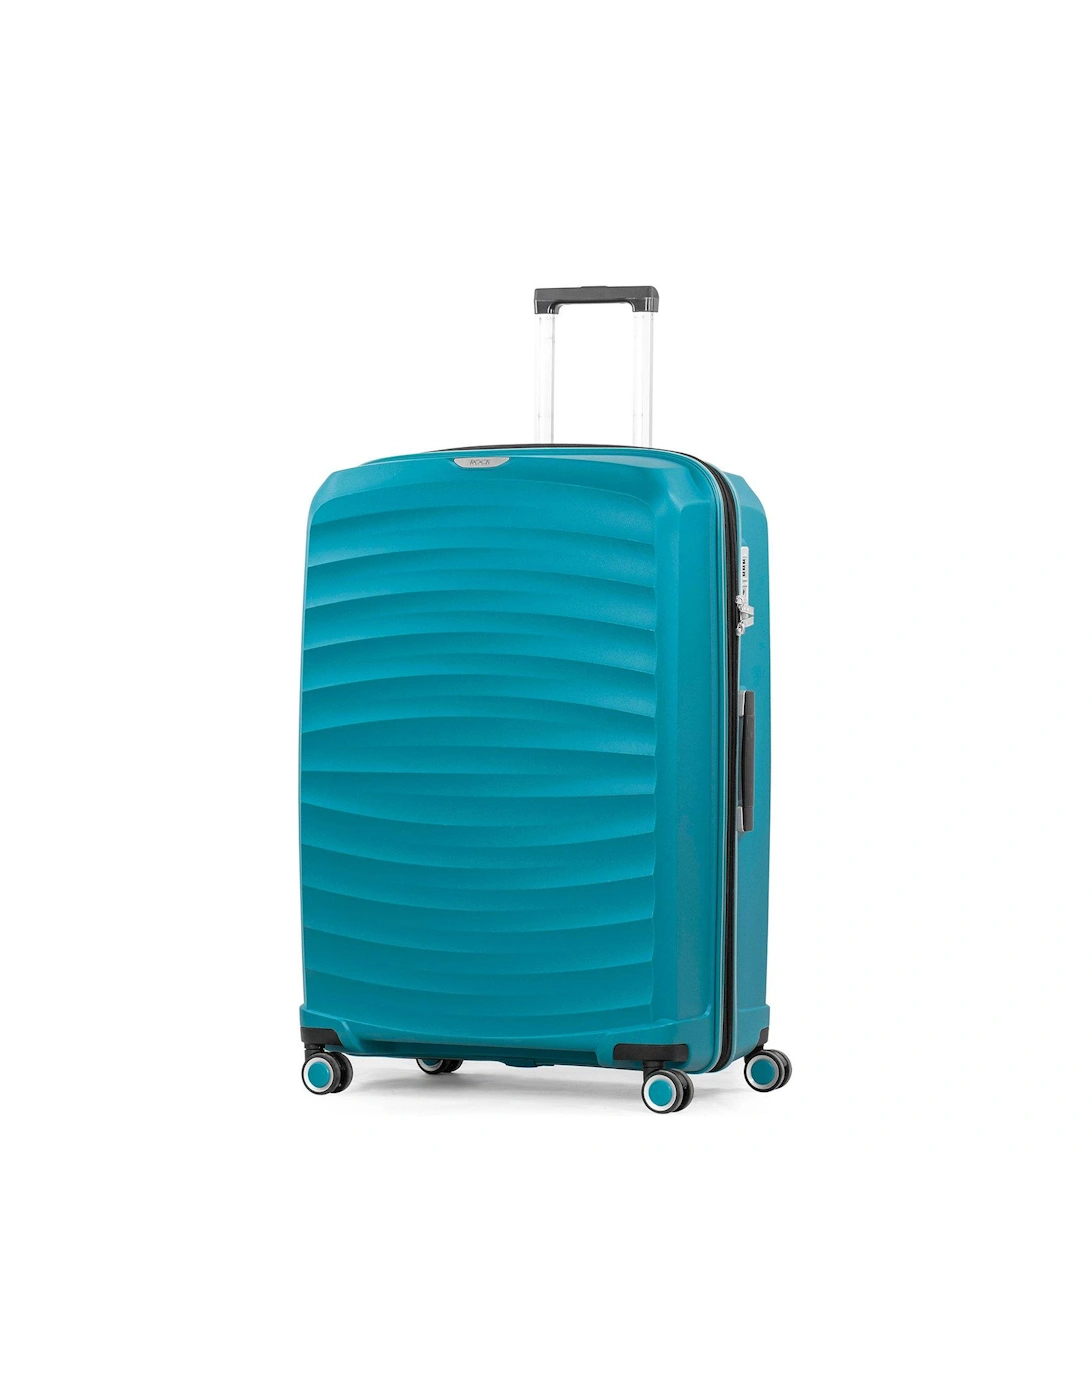 Sunwave Large 8-Wheel Suitcase - Blue, 3 of 2